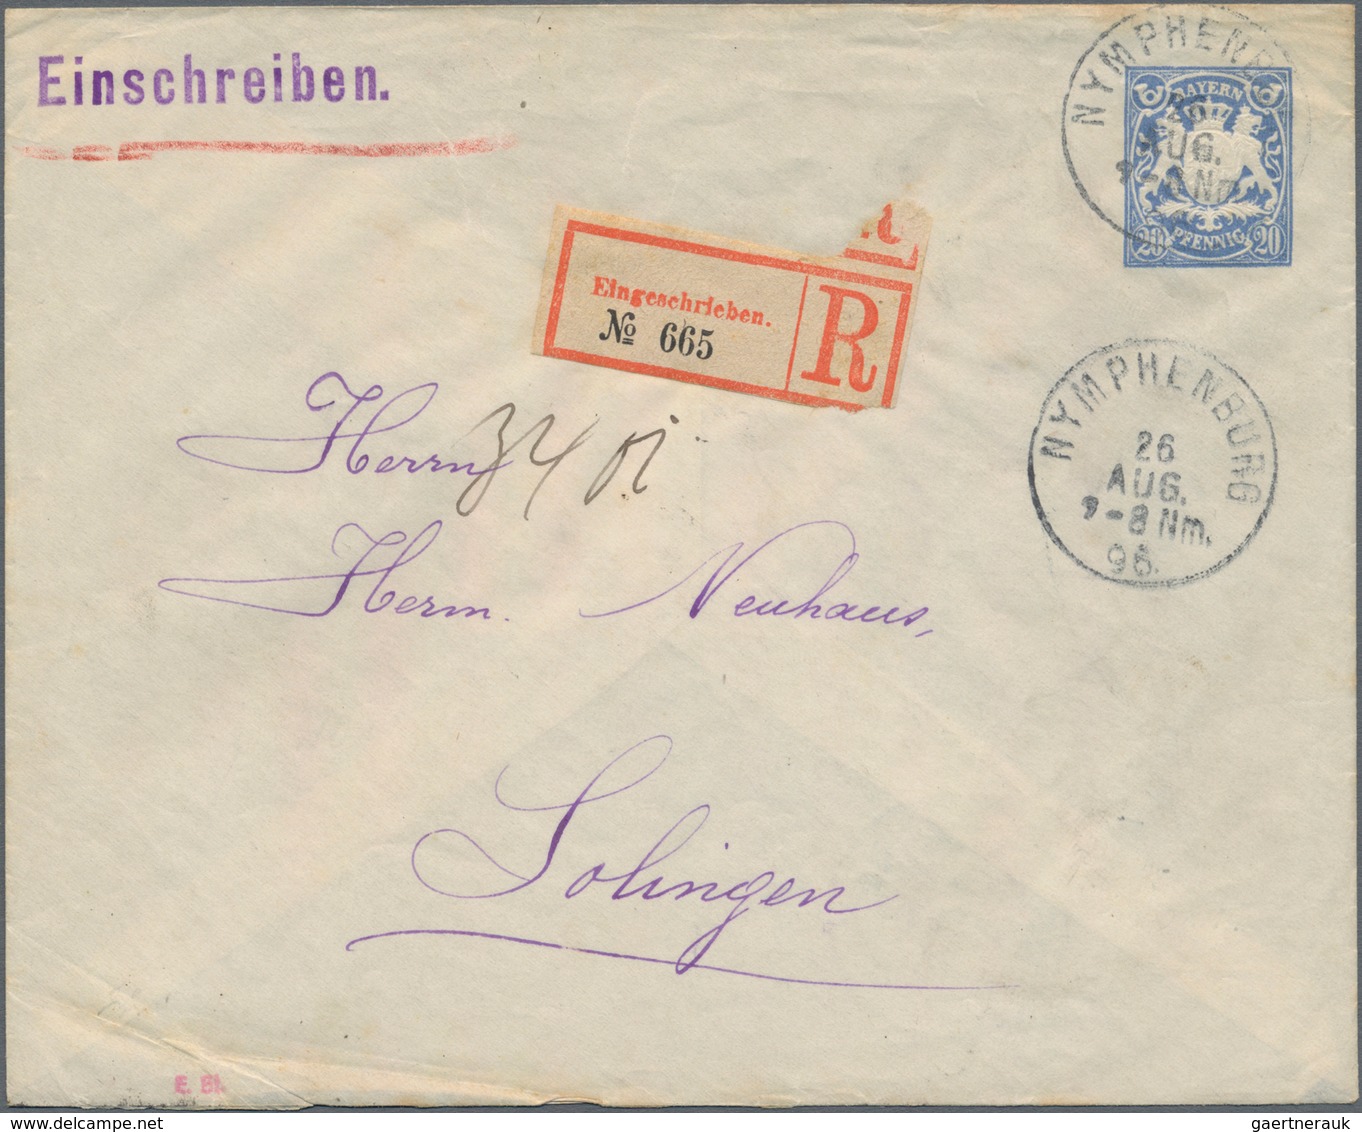 Bayern - Marken und Briefe: 1850/1920, interessante Sammlung mit ca.270 Briefen, Karten und Ganzsach